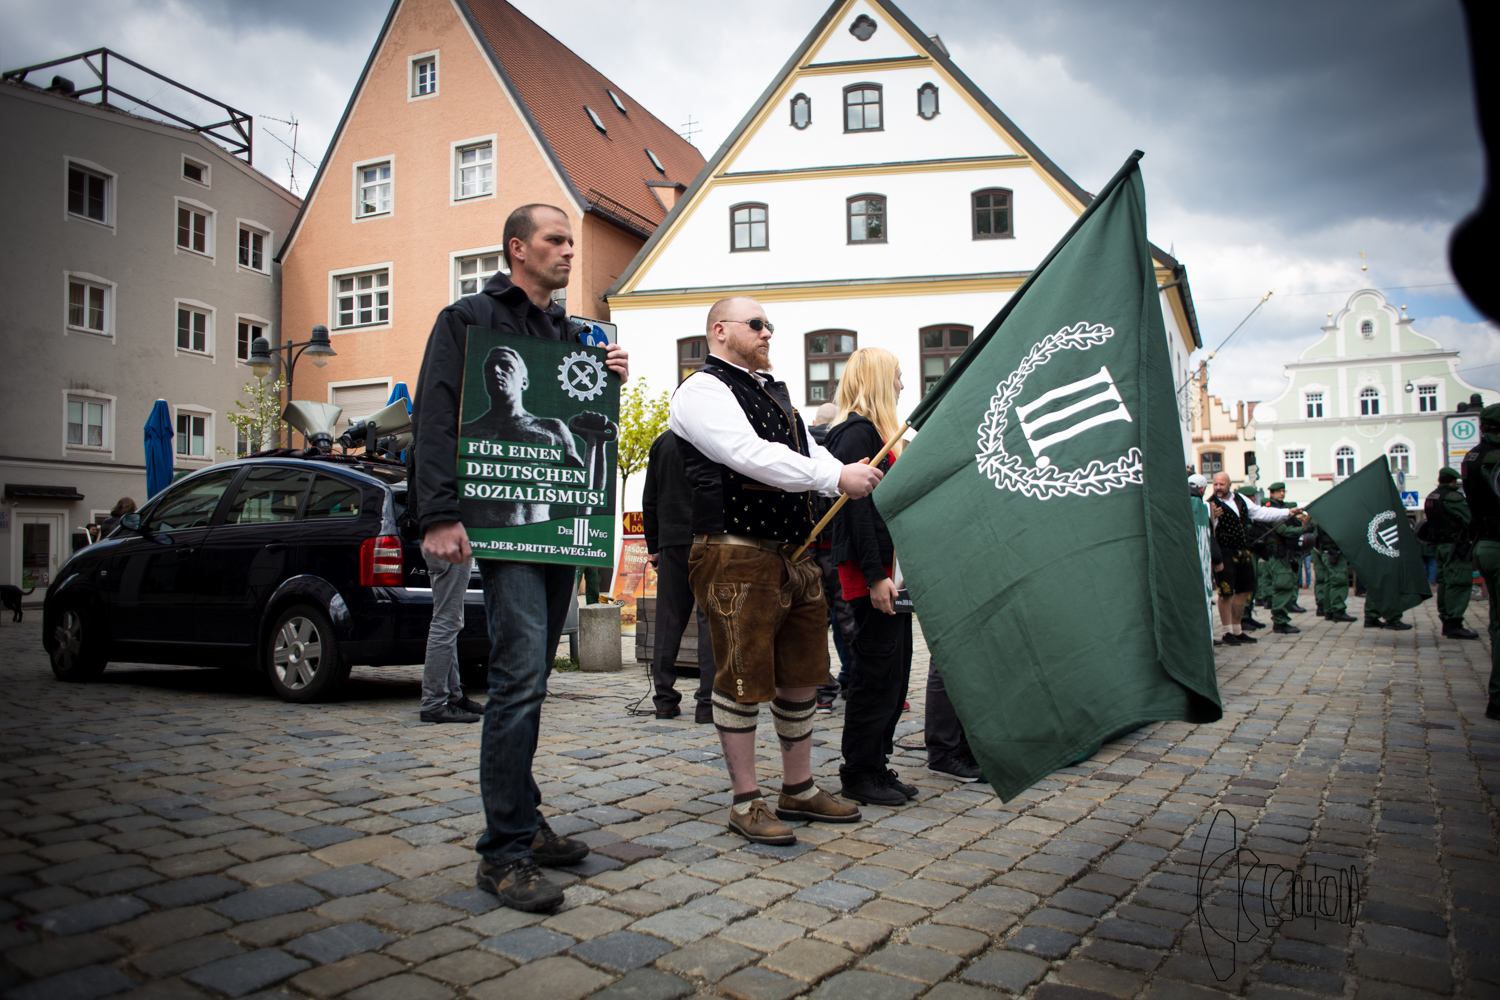 Γερμανία: Oι αφίσες ακροδεξιών με το σύνθημα «Κρεμάστε τους Πράσινους», προκαλεί αντιδράσεις